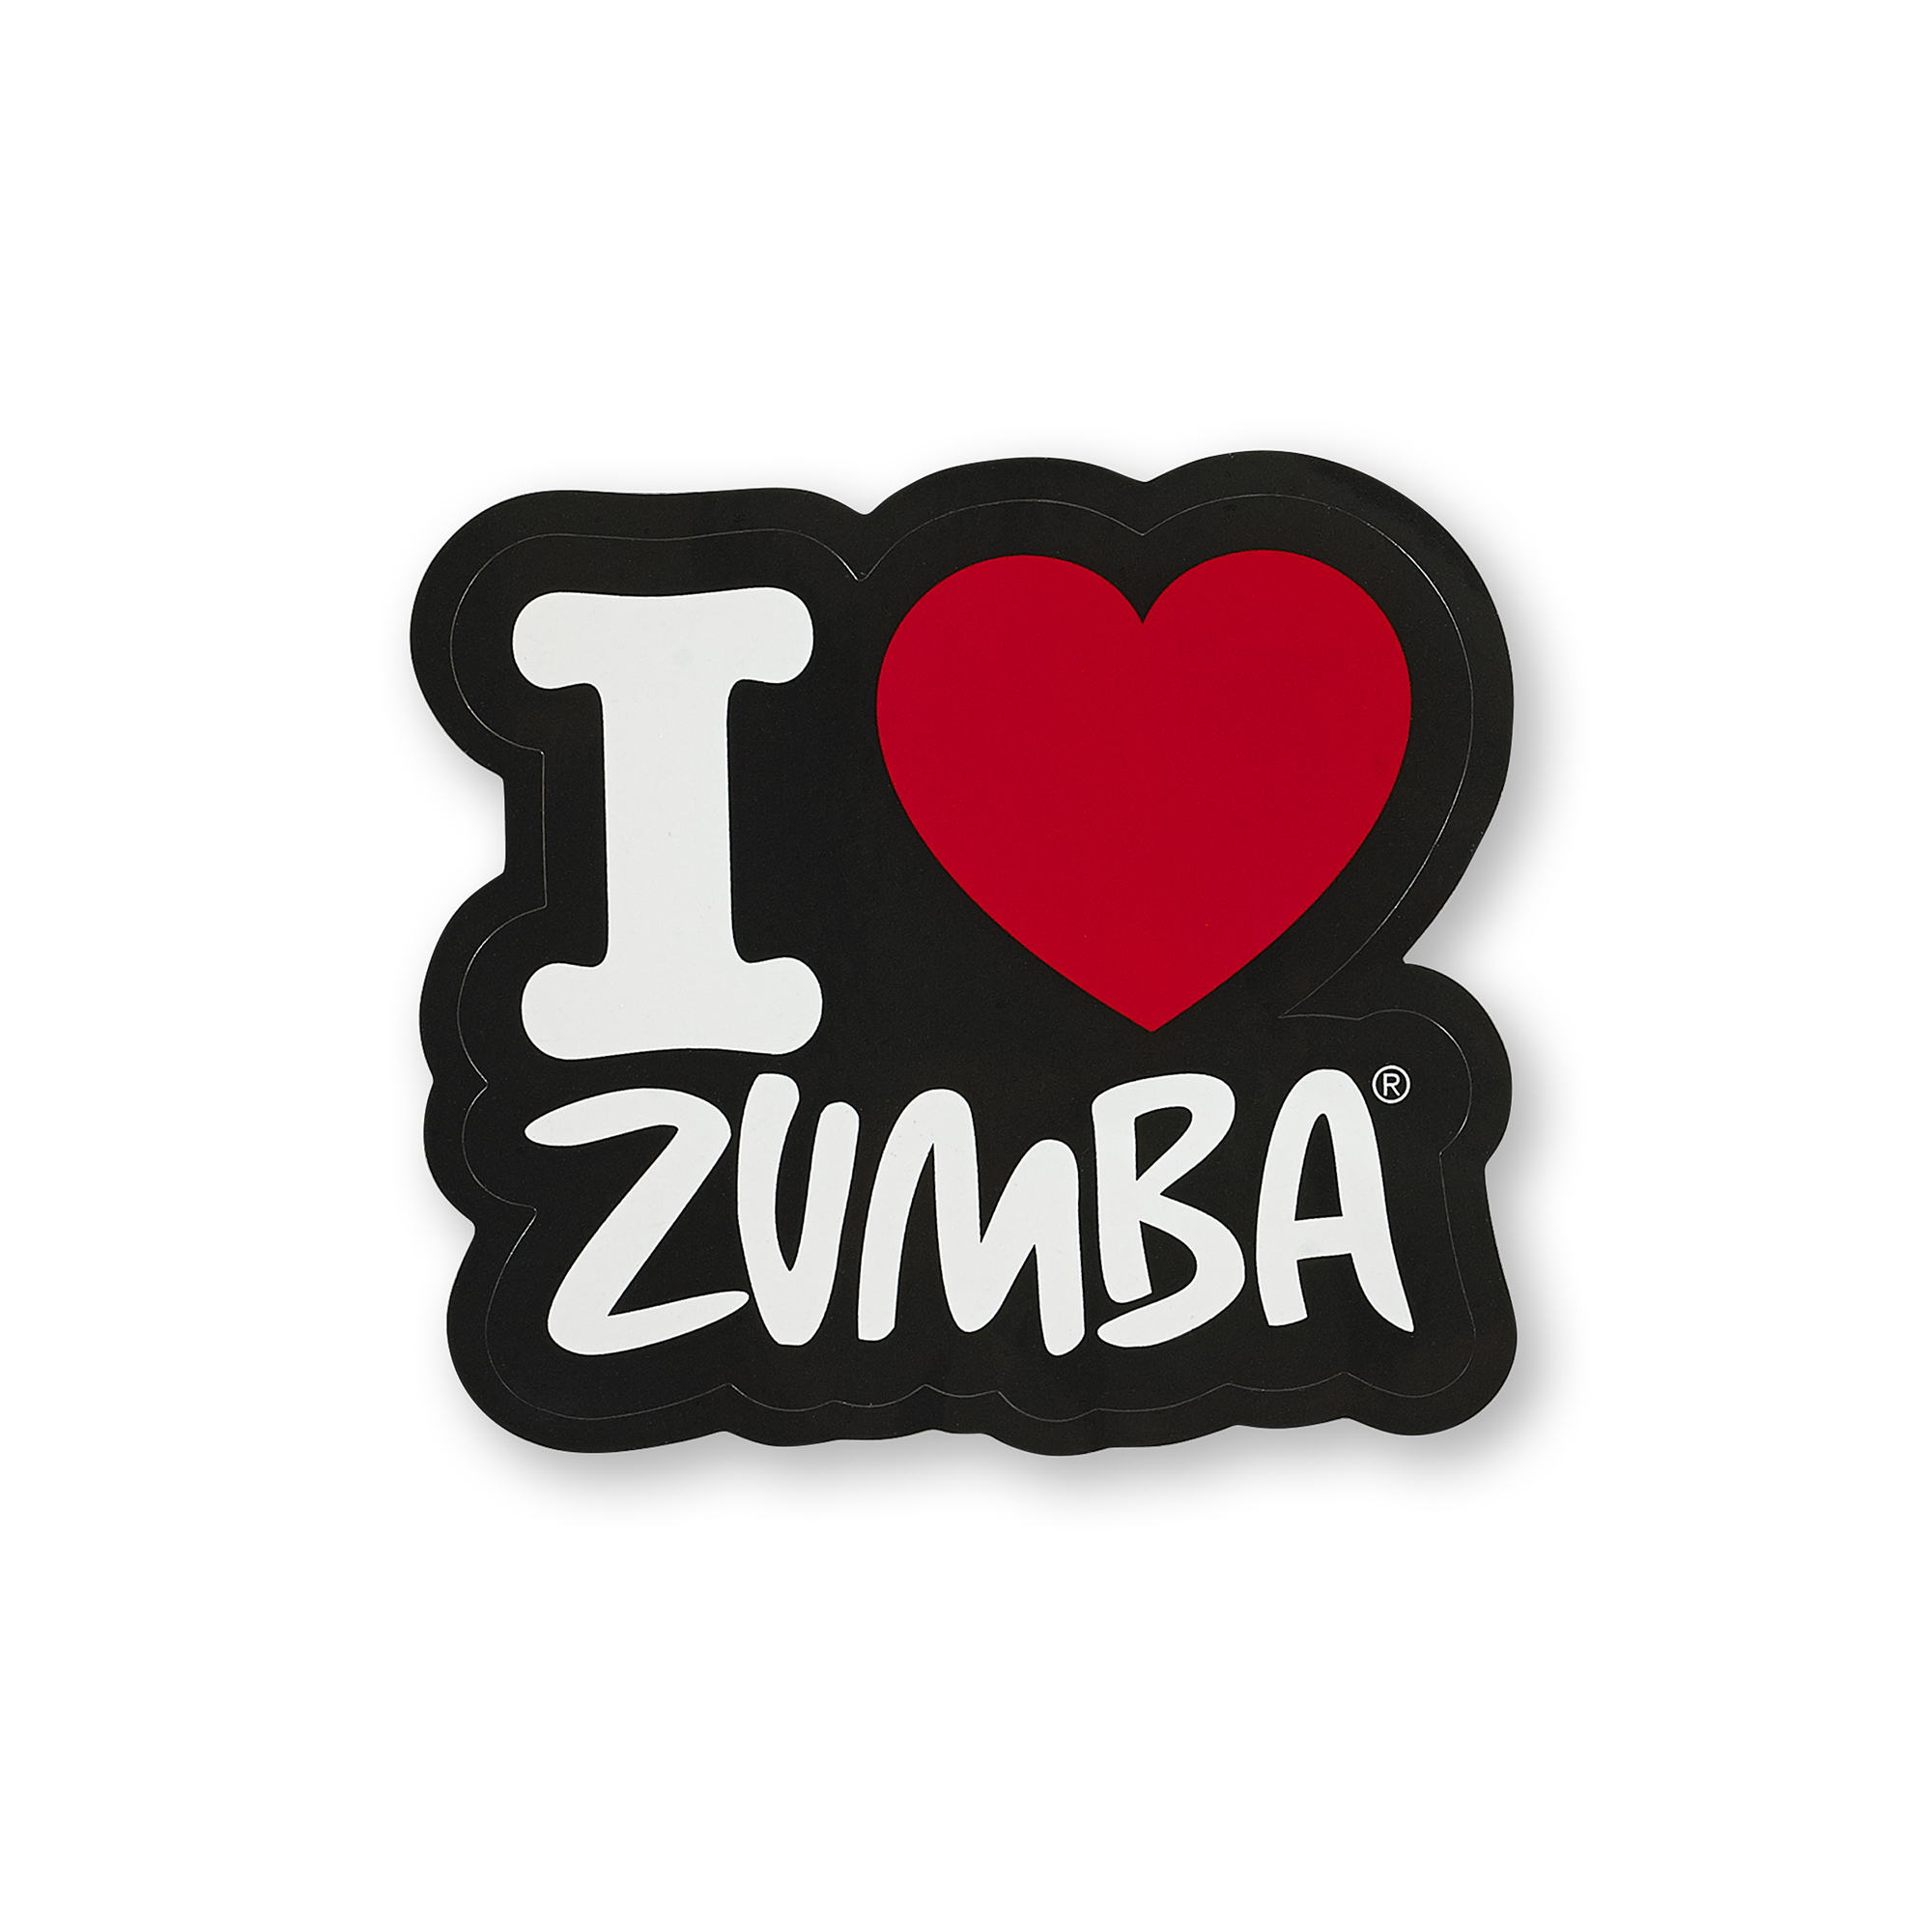 I Love Zumba Sticker Zumba Shop Seazumba Shop Sea